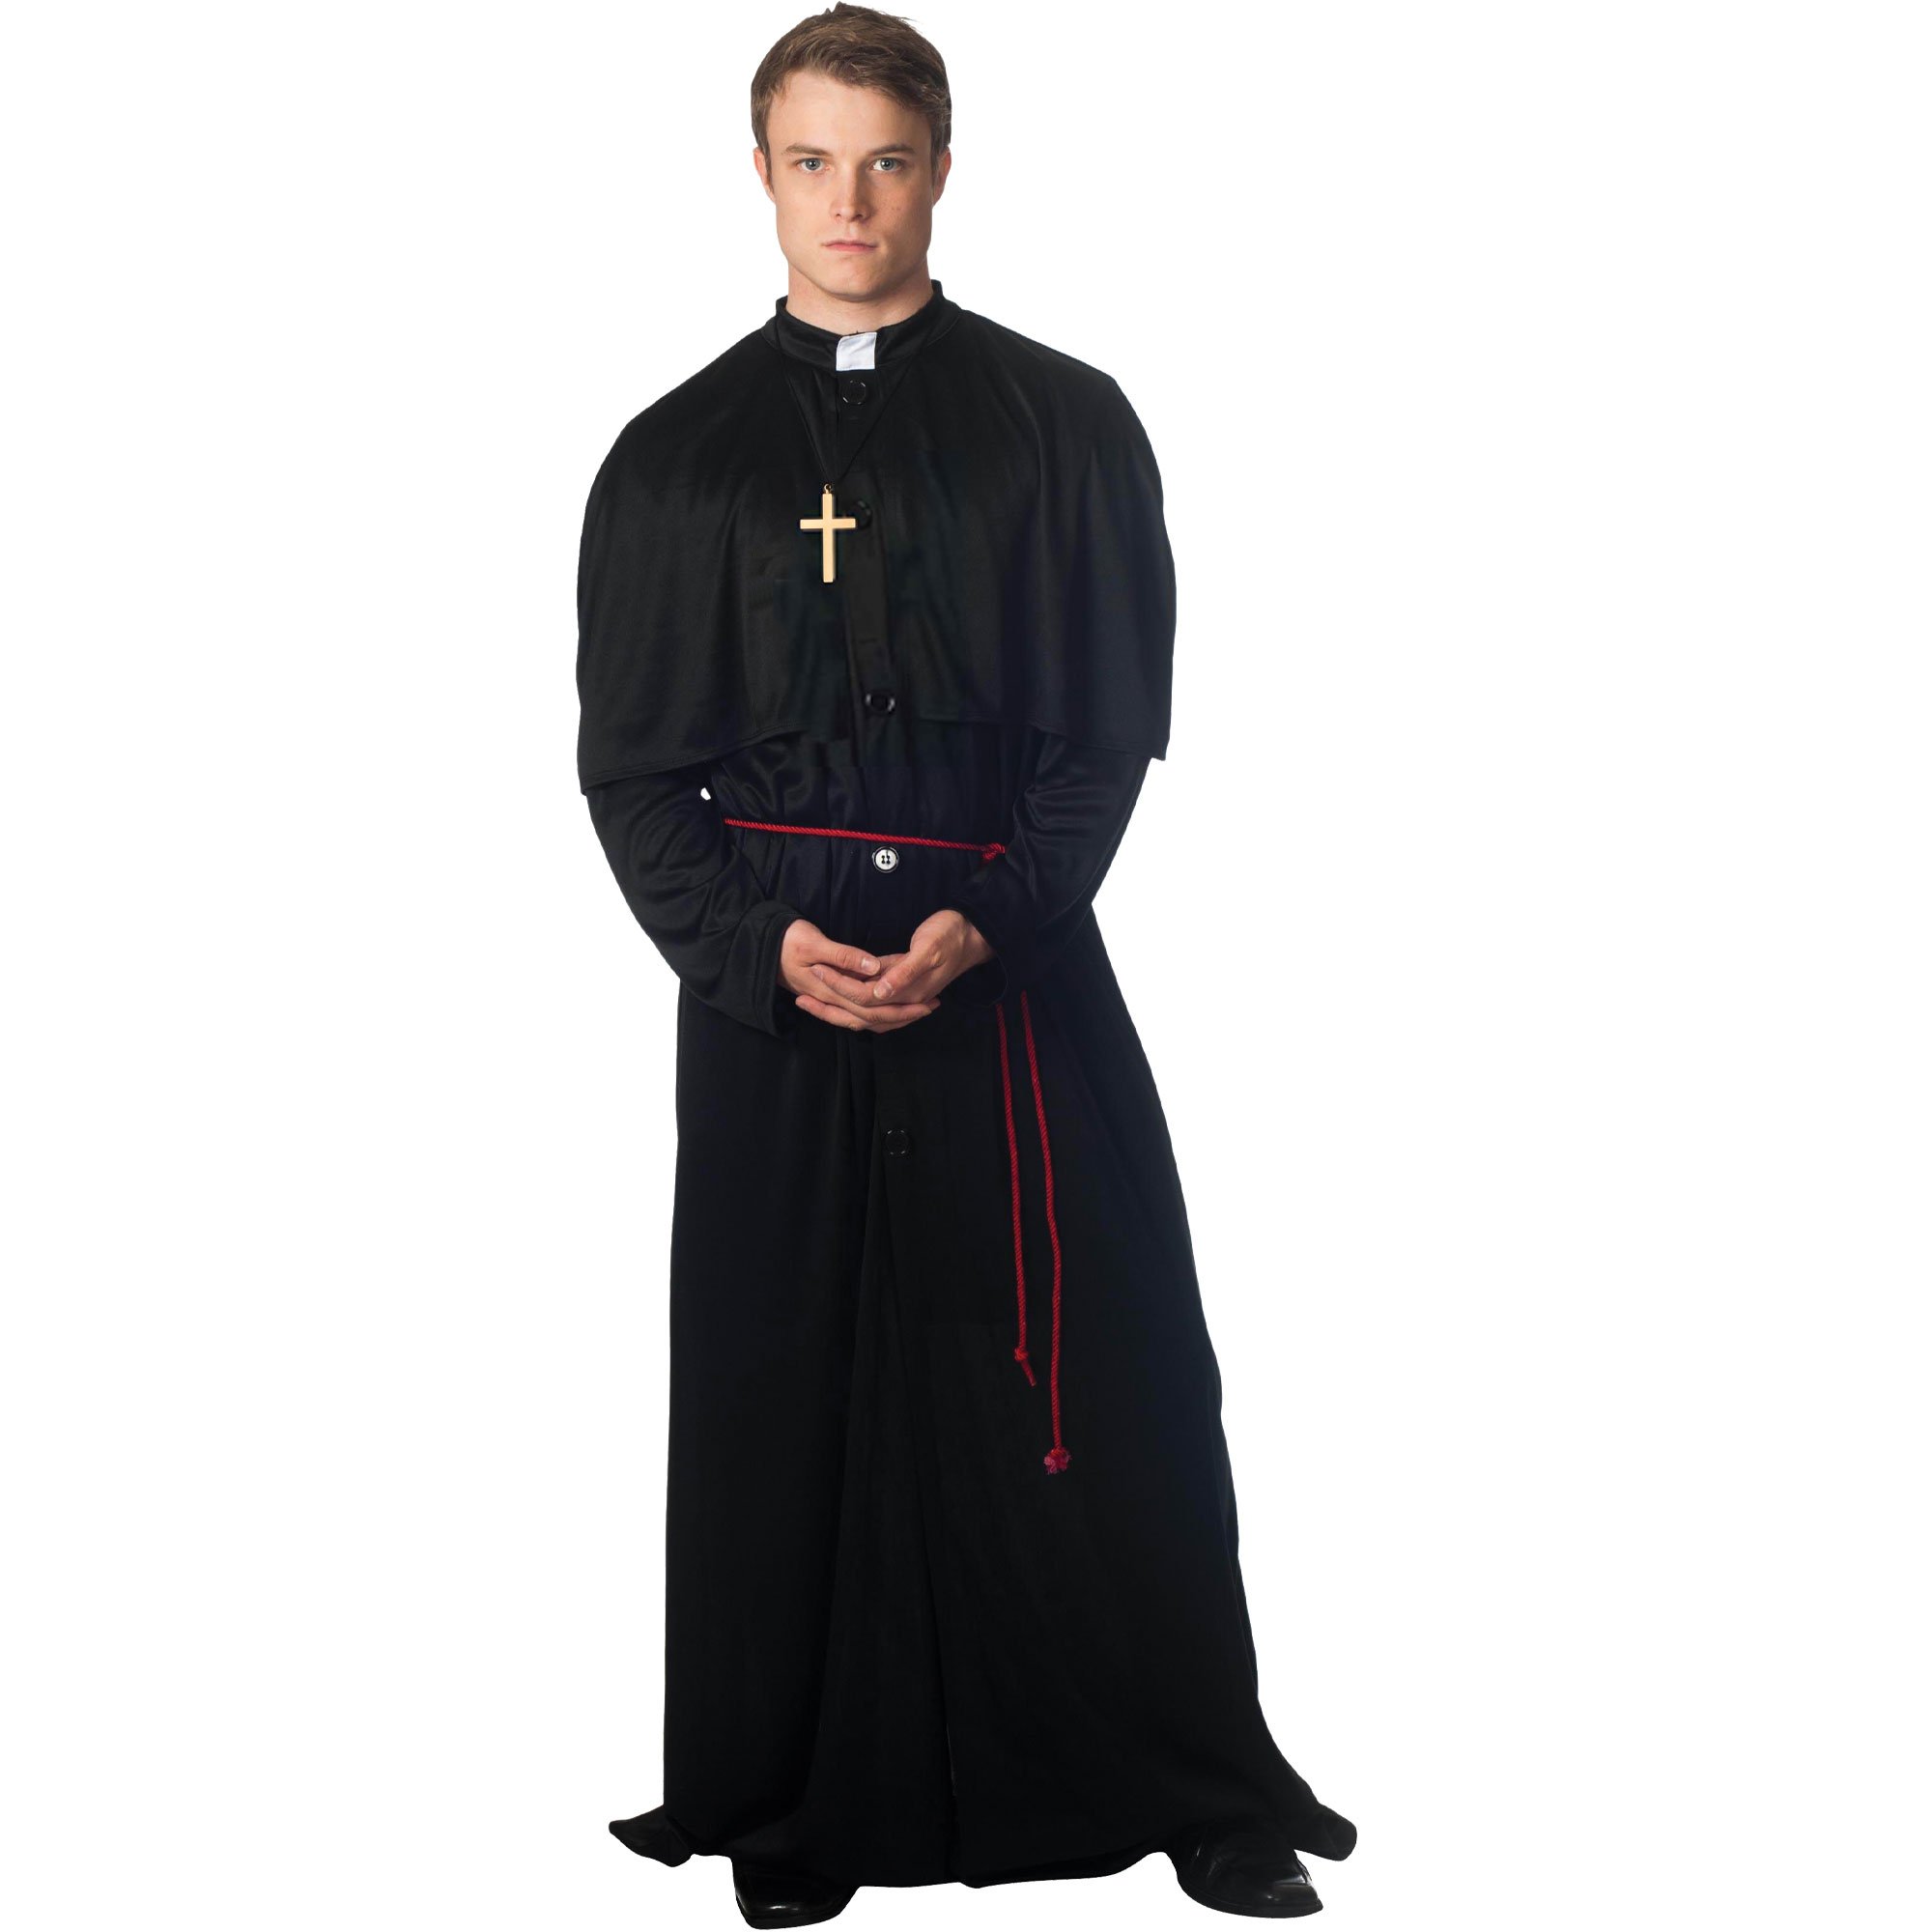 Платье священника. Ряса монаха Католика. Костюм ряса ксендза. Одежда монаха ряса и мантия. Капеллан священник католический.